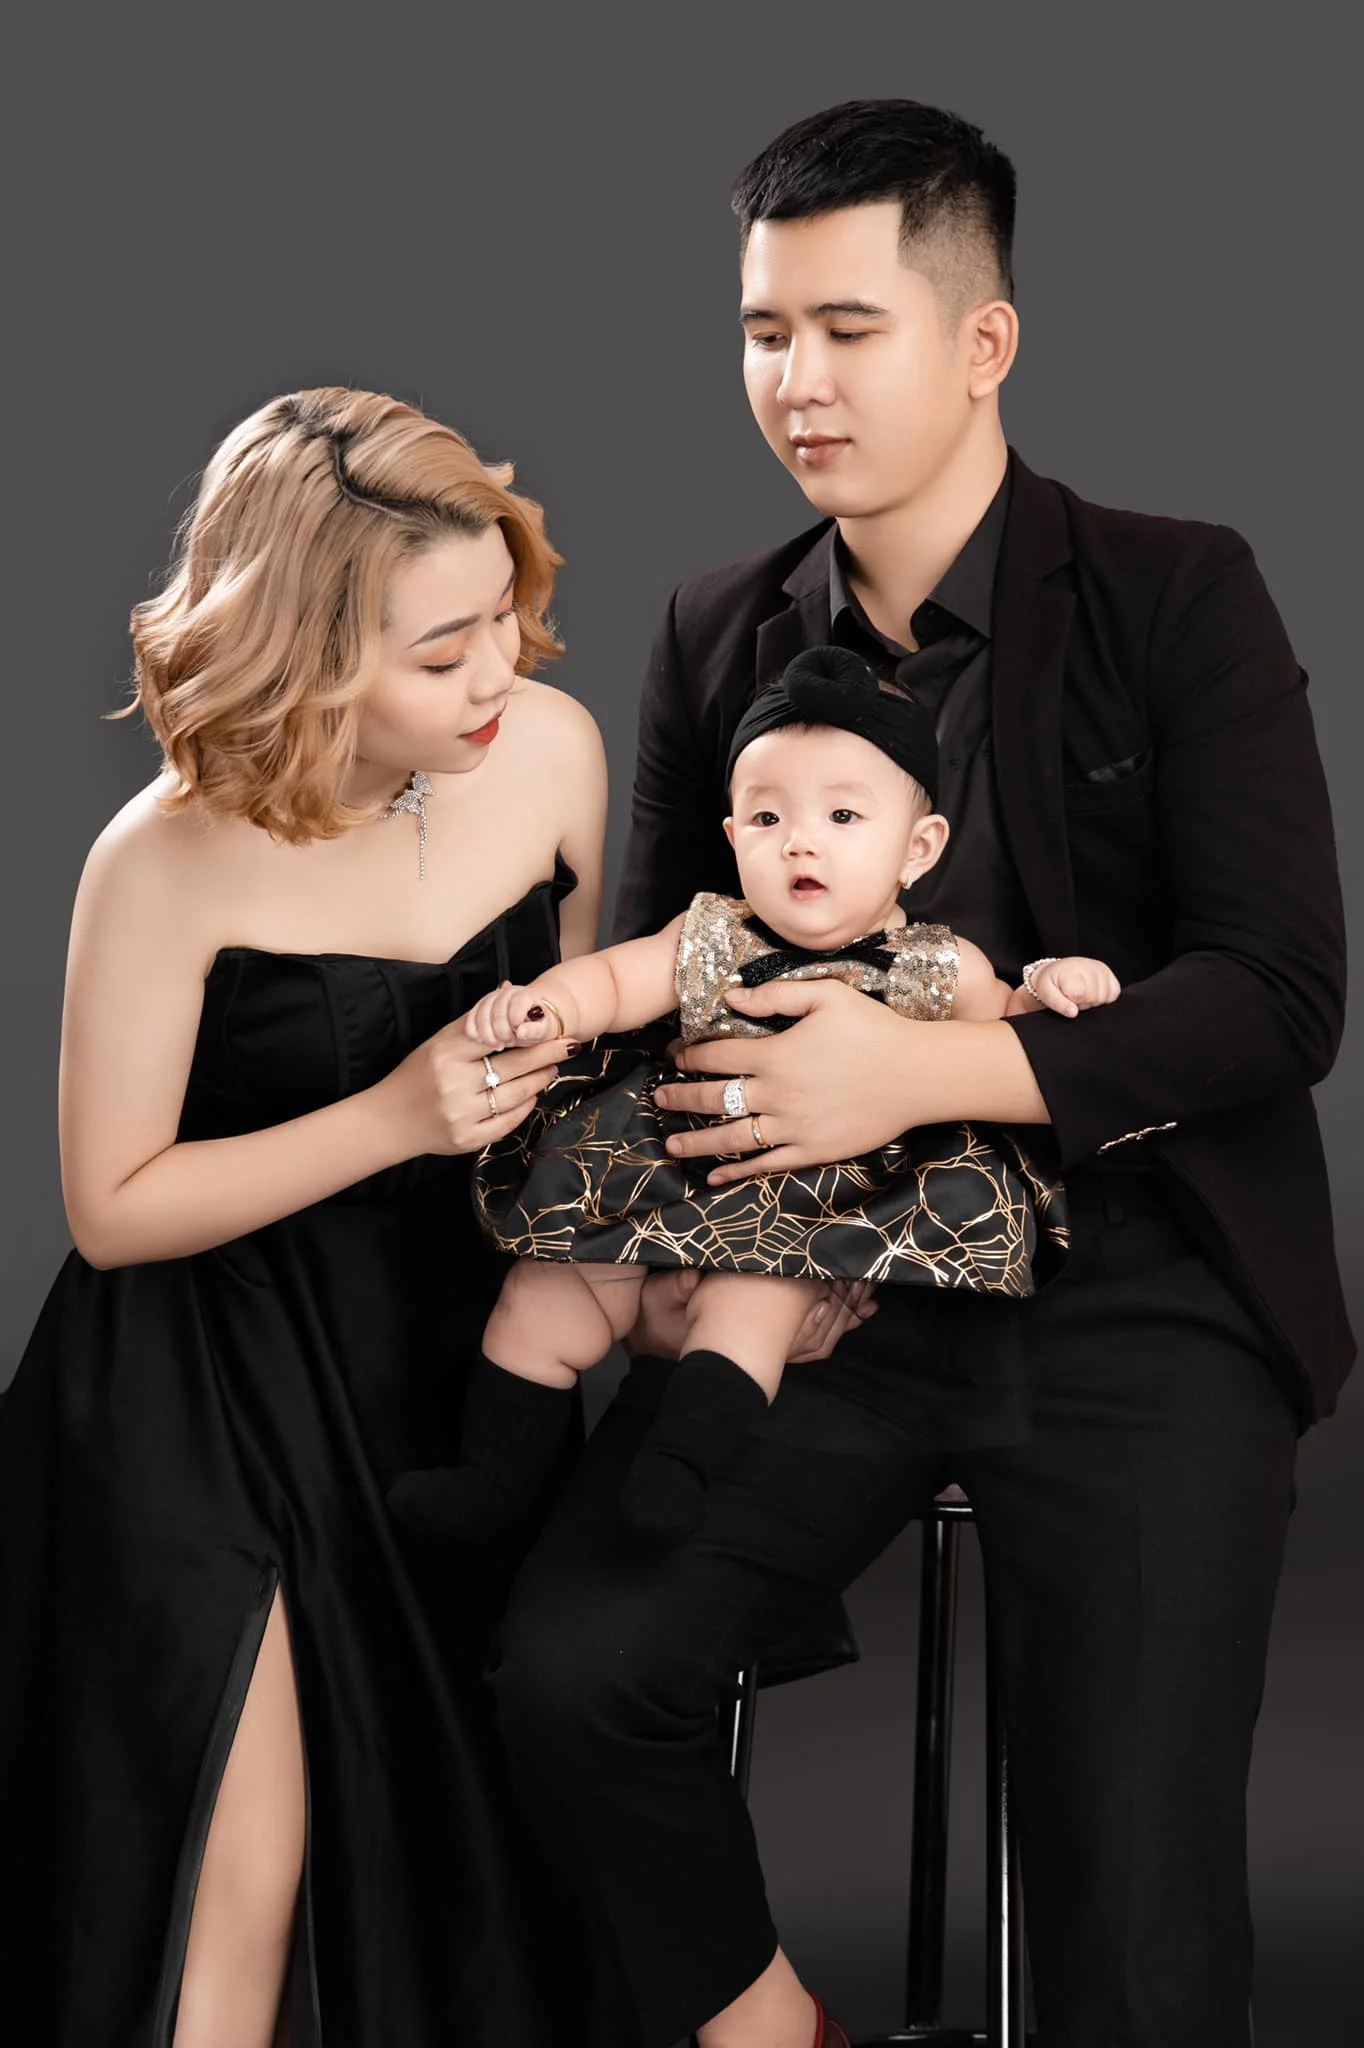 Anh gia dinh 1 1 - 35 cách tạo dáng chụp ảnh gia đình 3 người đẹp nhất - HThao Studio